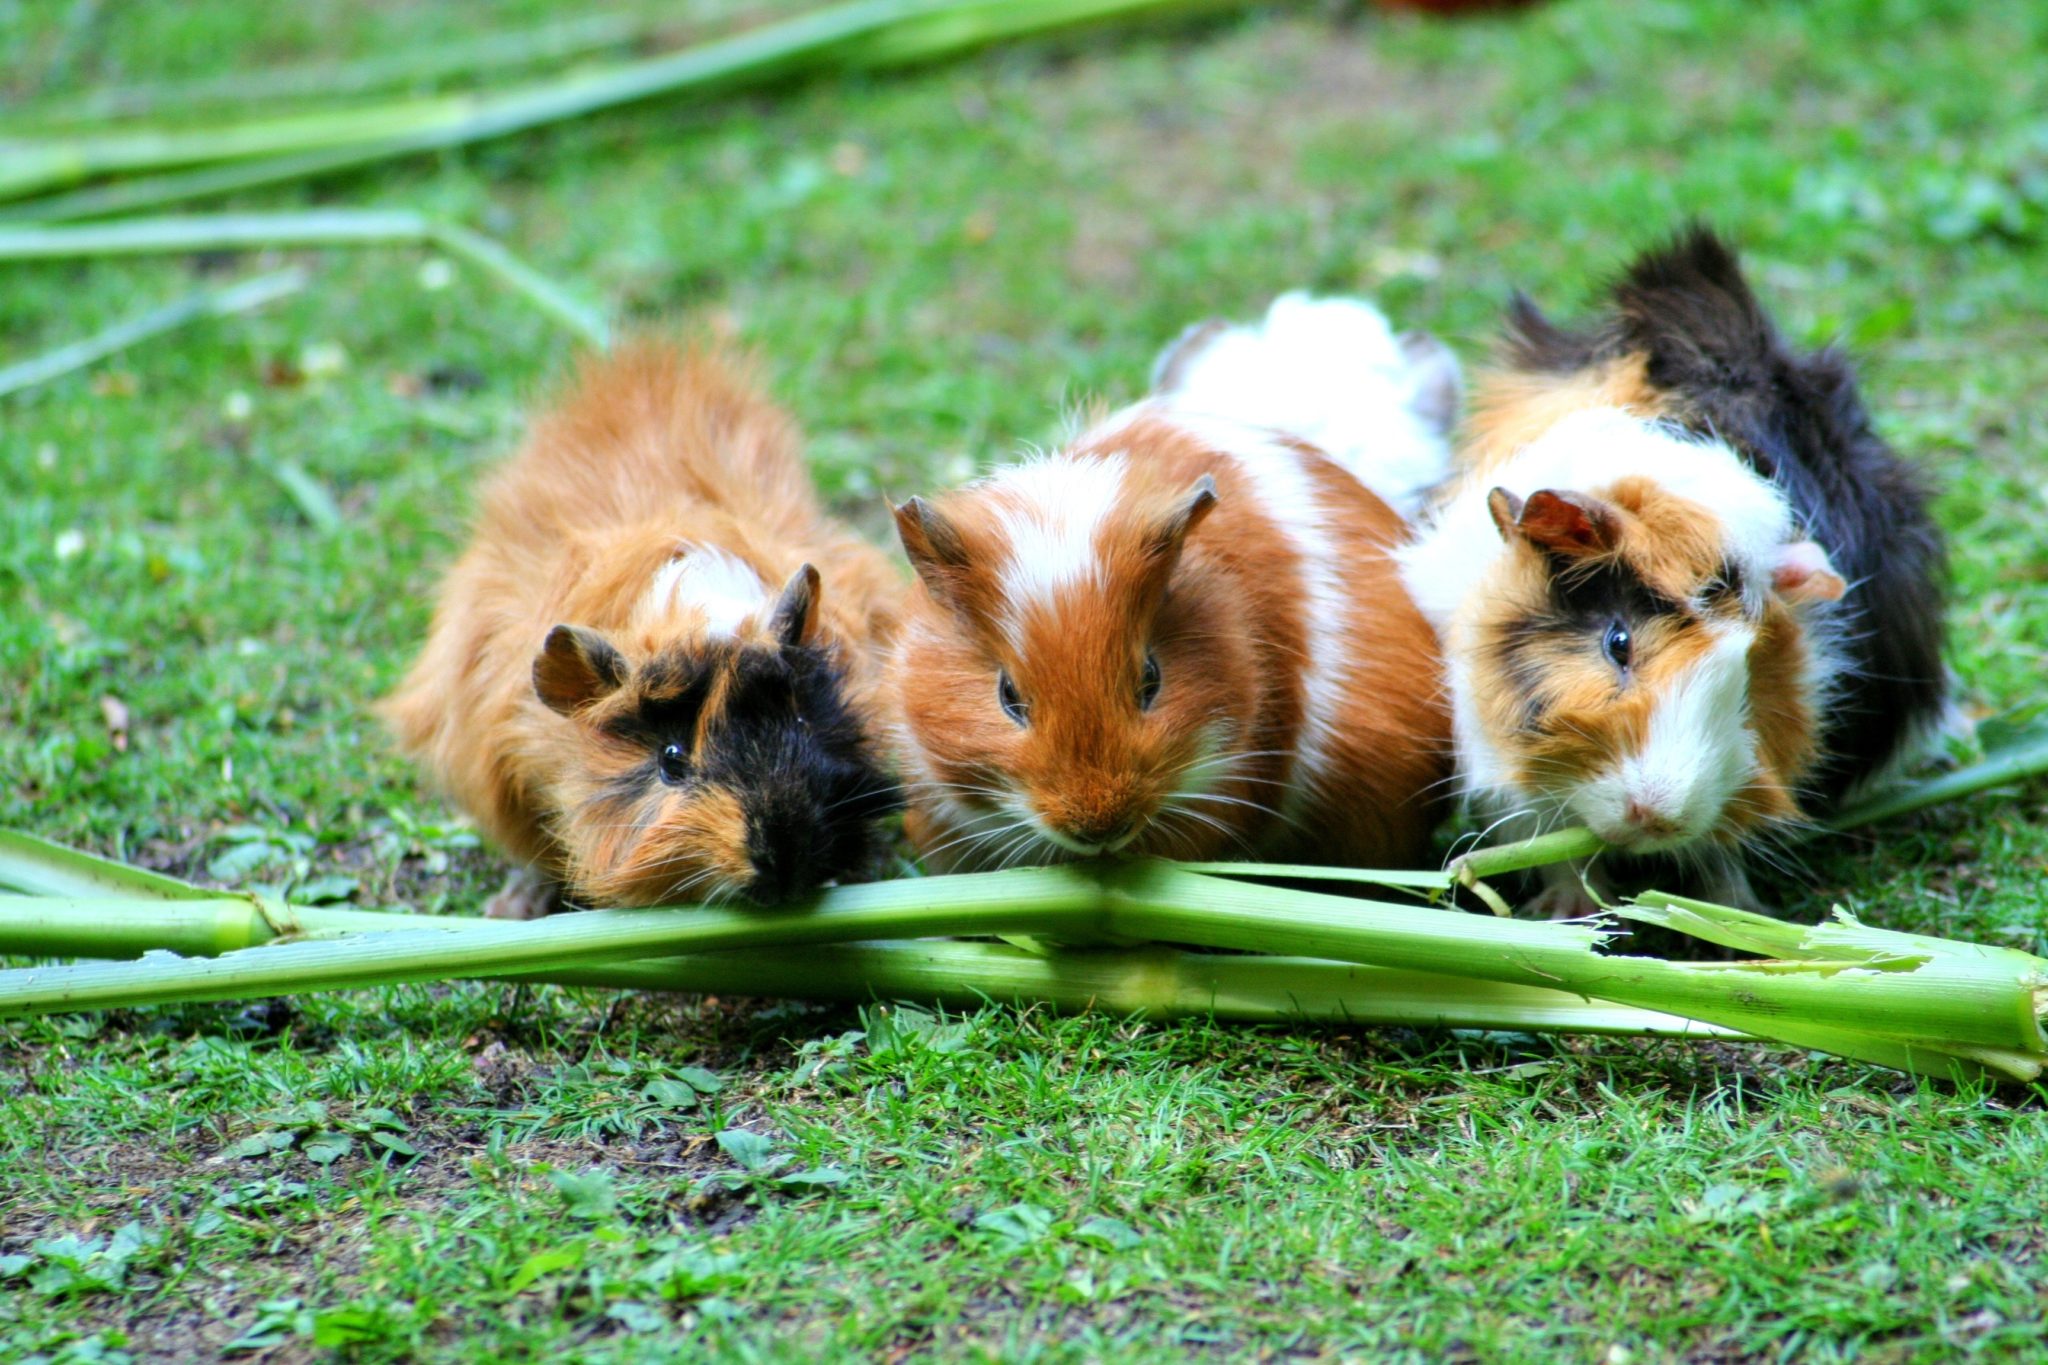 baby guinea pig care